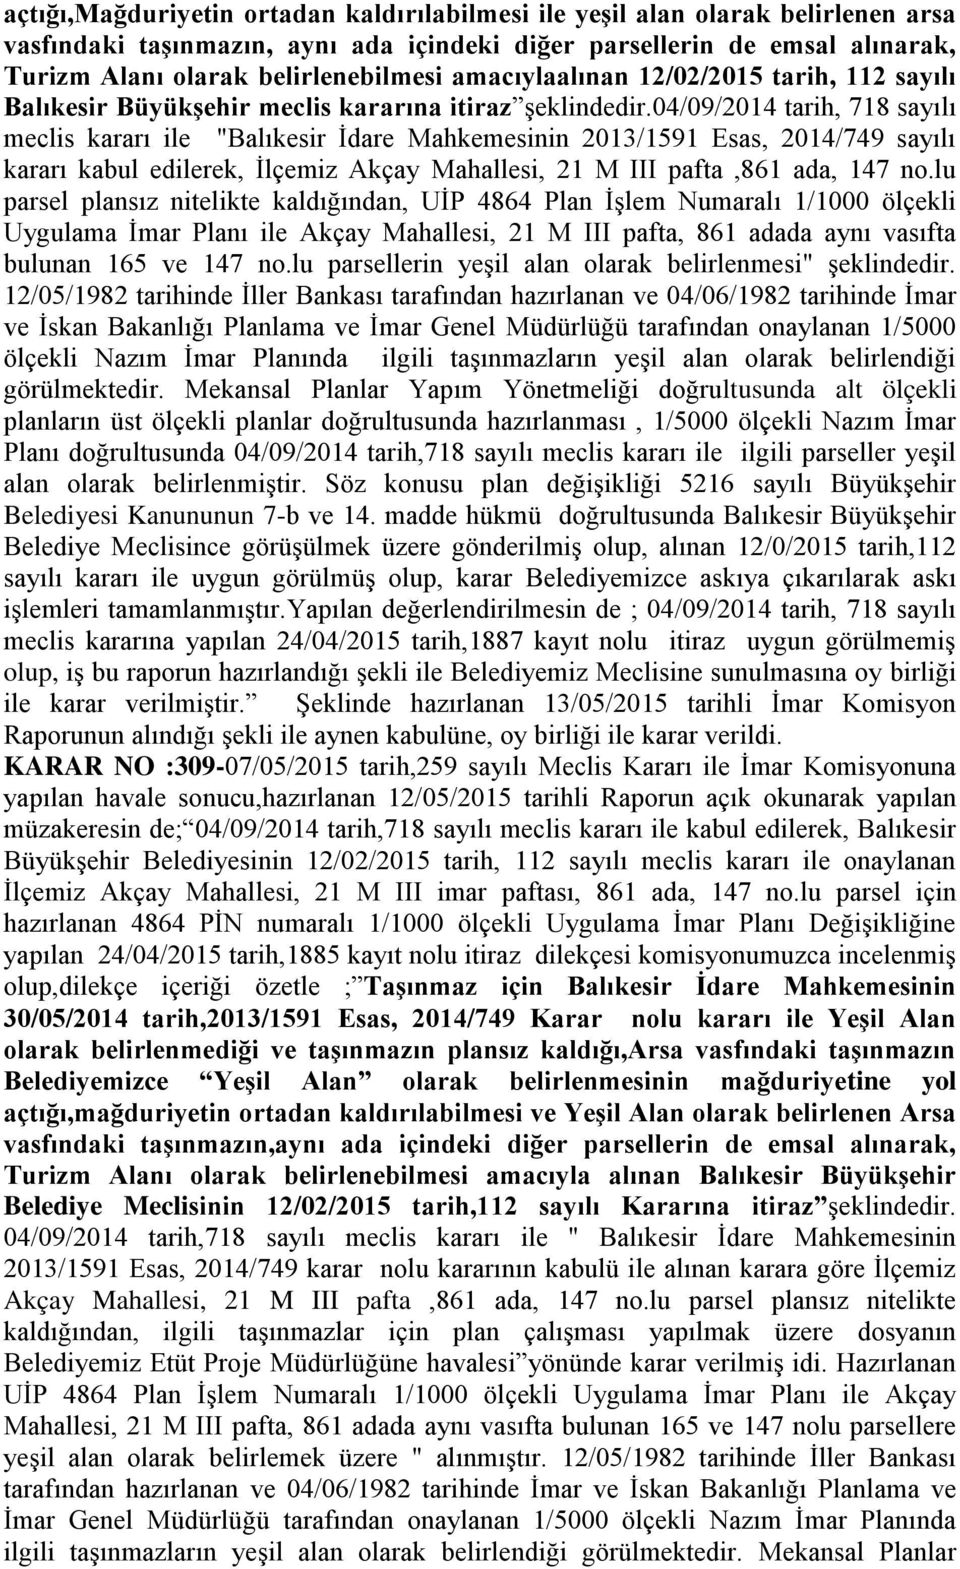 04/09/2014 tarih, 718 sayılı meclis kararı ile "Balıkesir Ġdare Mahkemesinin 2013/1591 Esas, 2014/749 sayılı kararı kabul edilerek, Ġlçemiz Akçay Mahallesi, 21 M III pafta,861 ada, 147 no.